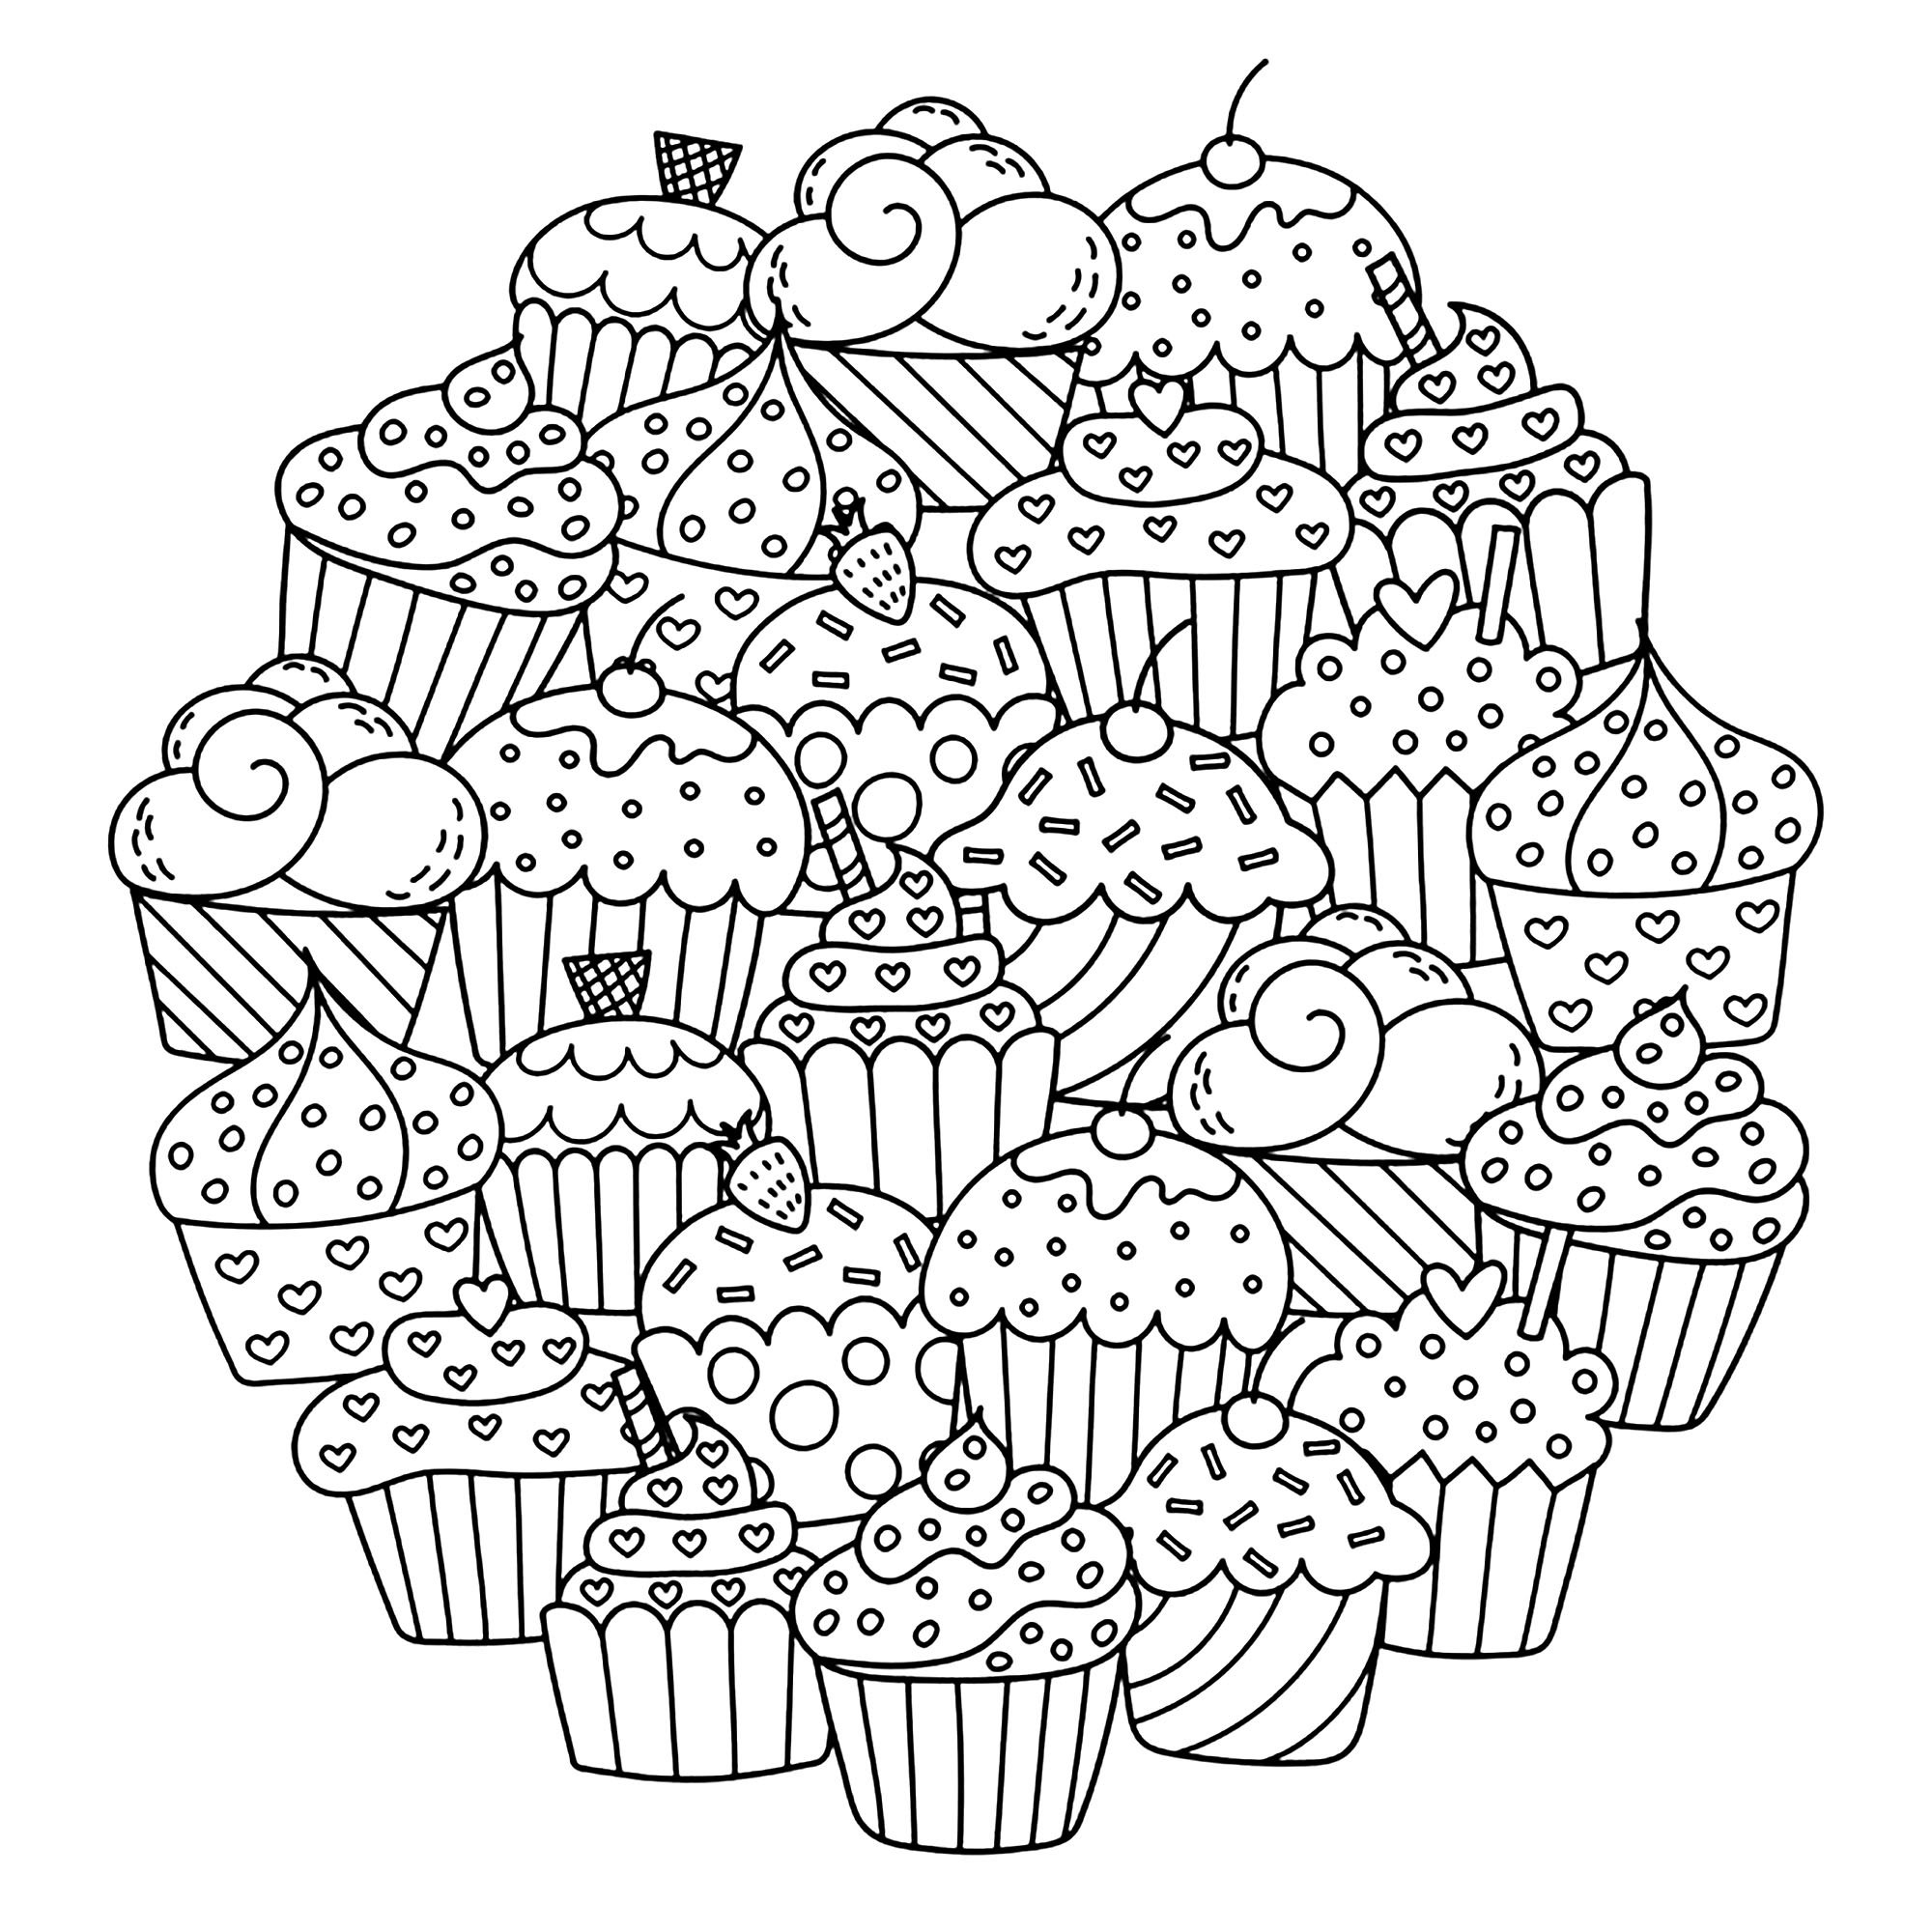 Ces mignons petits gâteaux forment un beau rond pour vous inviter à les colorier !, Source : 123rf   Artiste : Gulnara Sabirova